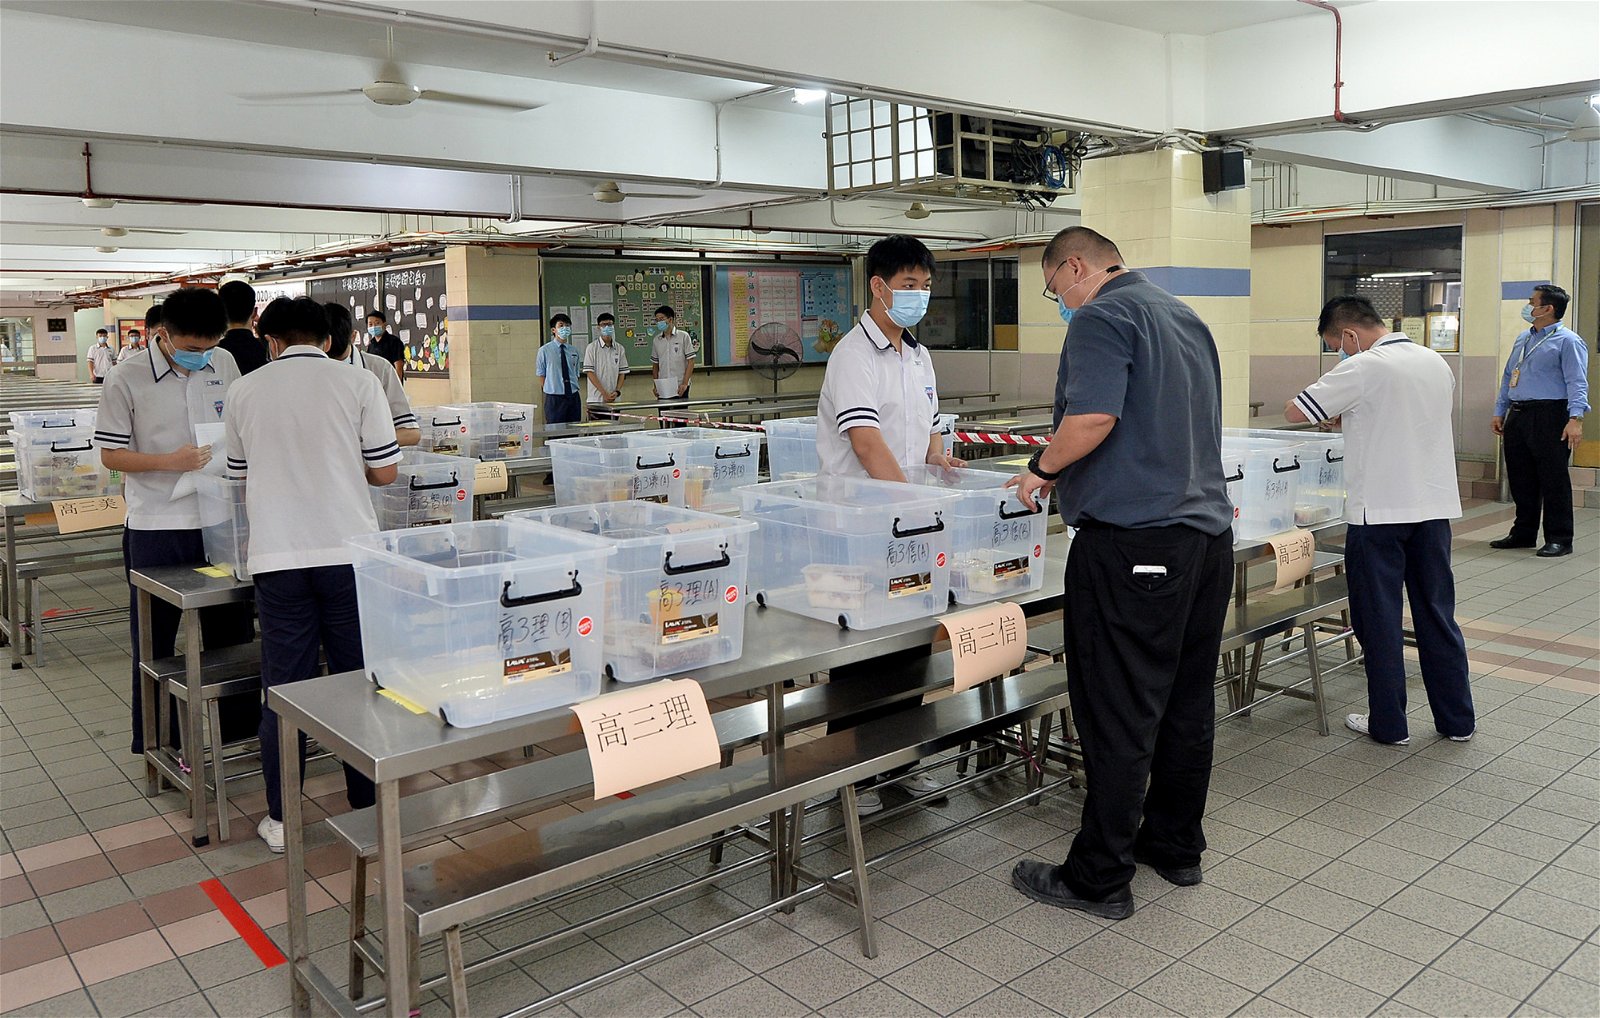 食堂业者会根据学生订购的餐点安排出餐，并会依照班级分配饭盒，学生们在点算完毕后，就会搬回班上，并进行分派。